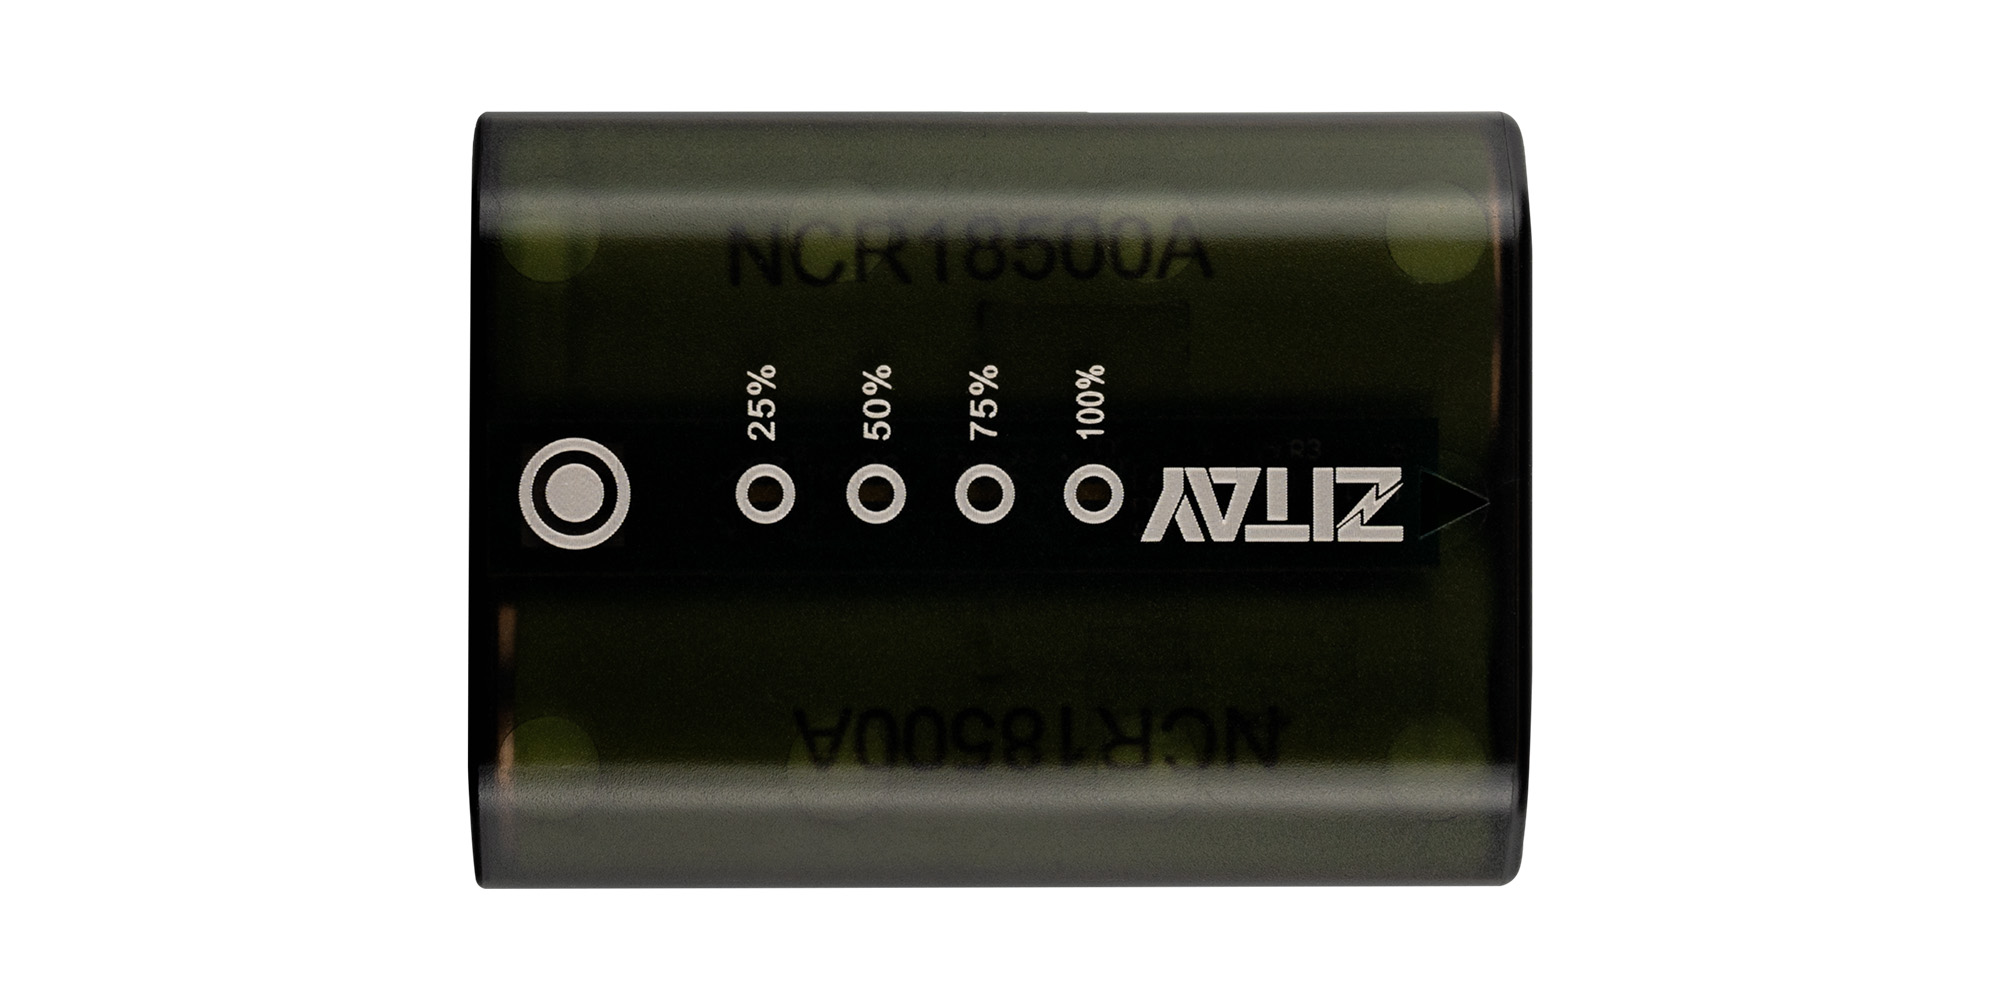 Akumulator Zitay zamiennik NP-FZ100 - Wskaźnik poziomu naładowania